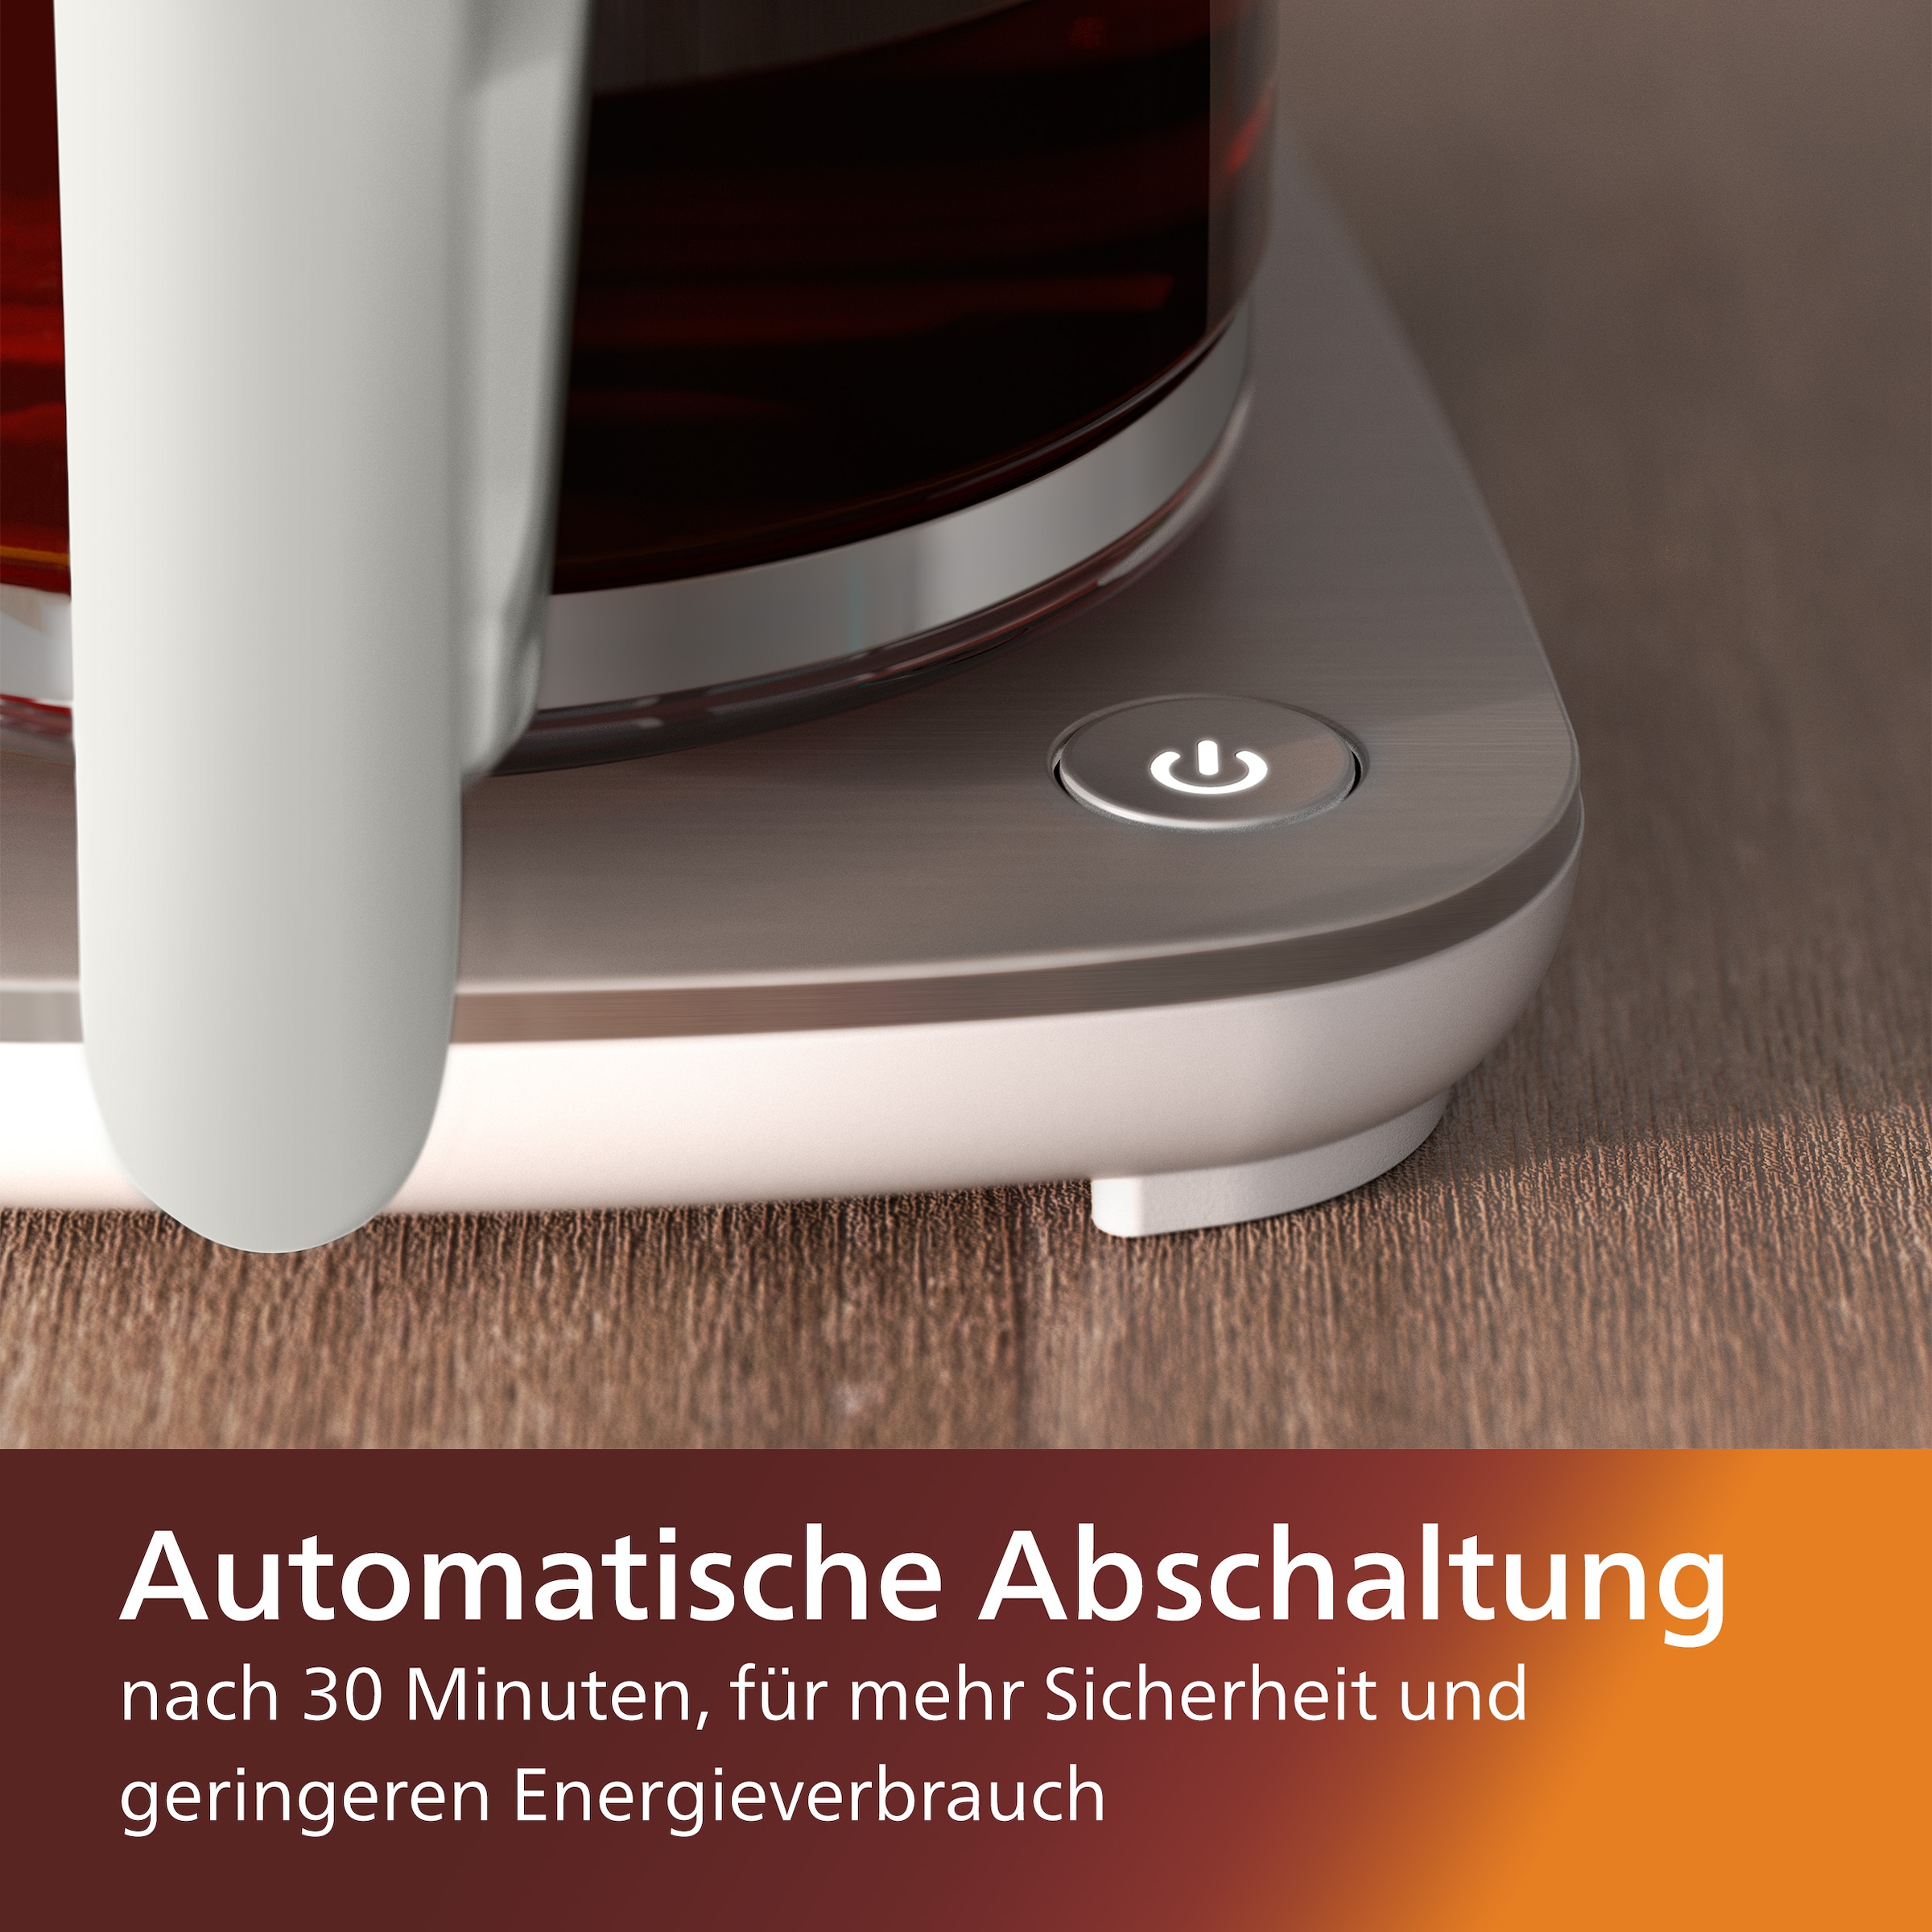 Philips Filterkaffeemaschine »HD5416/00 Café Gourmet weiß«, 1,25 l Kaffeekanne, Papierfilter, 1x4, mit Direkt-Brühprinzip, Aroma-Twister und Schwenkfilterhalter